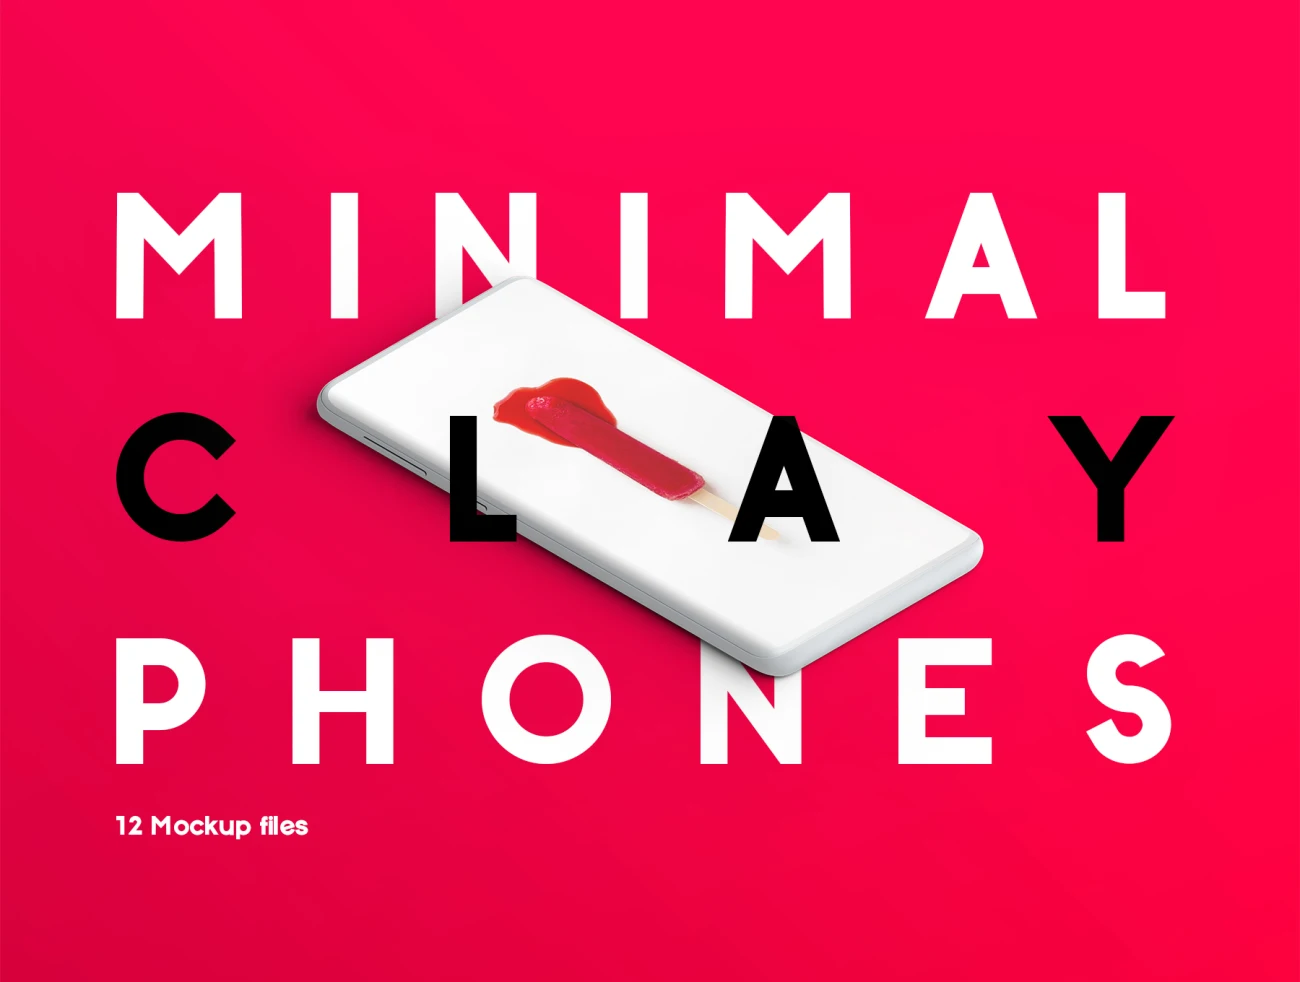 12种5k高清简约苹果安卓手机黏土模型智能样机 Minimal Clay Phones Mockup-产品展示、优雅样机、创意展示、手机模型、样机、简约样机-到位啦UI